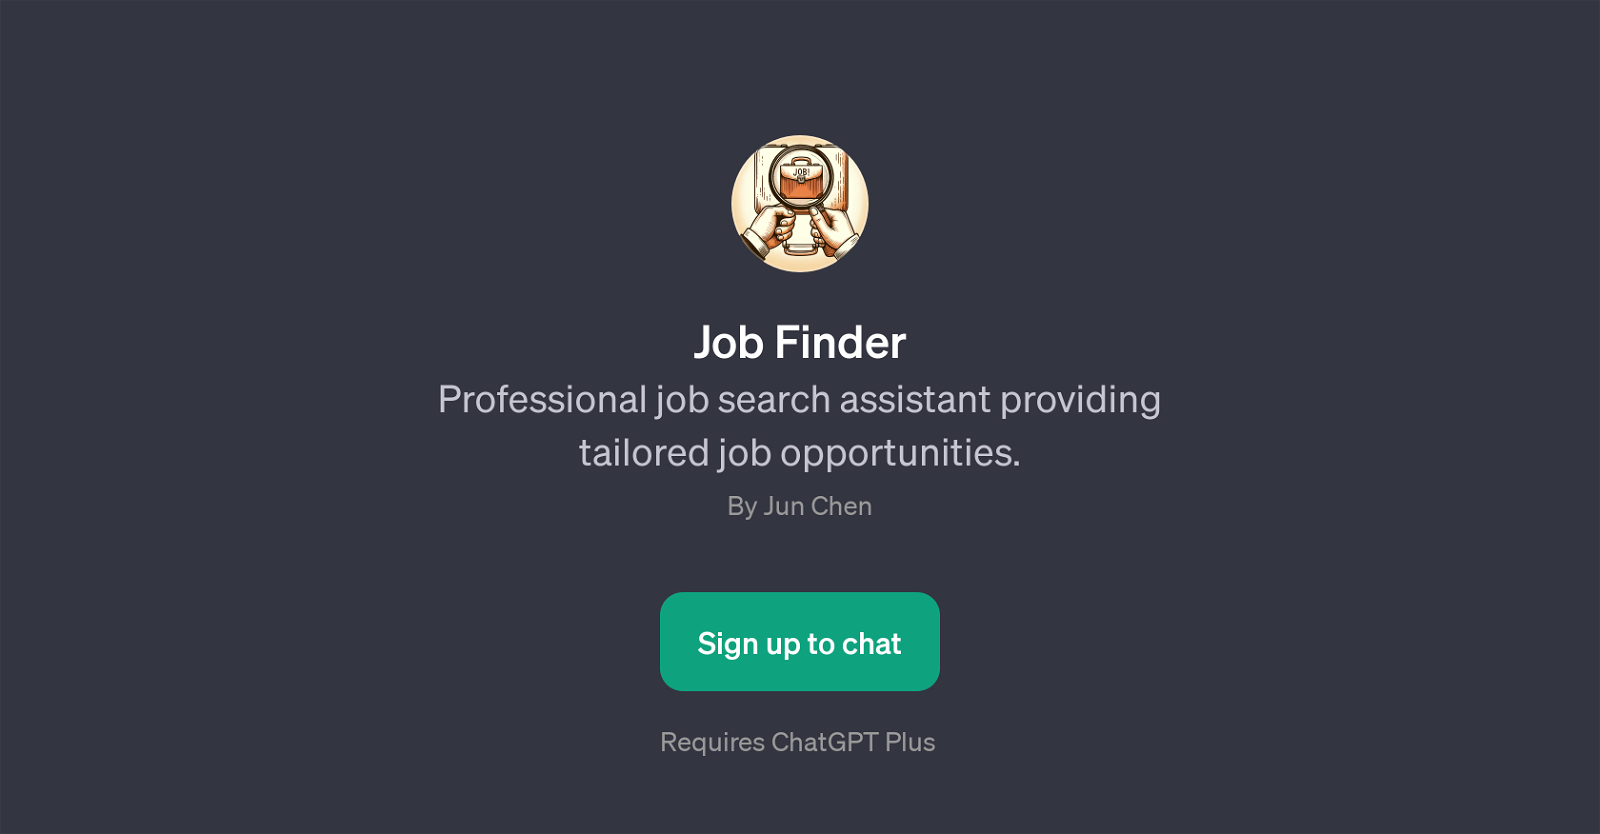 Job Finder website